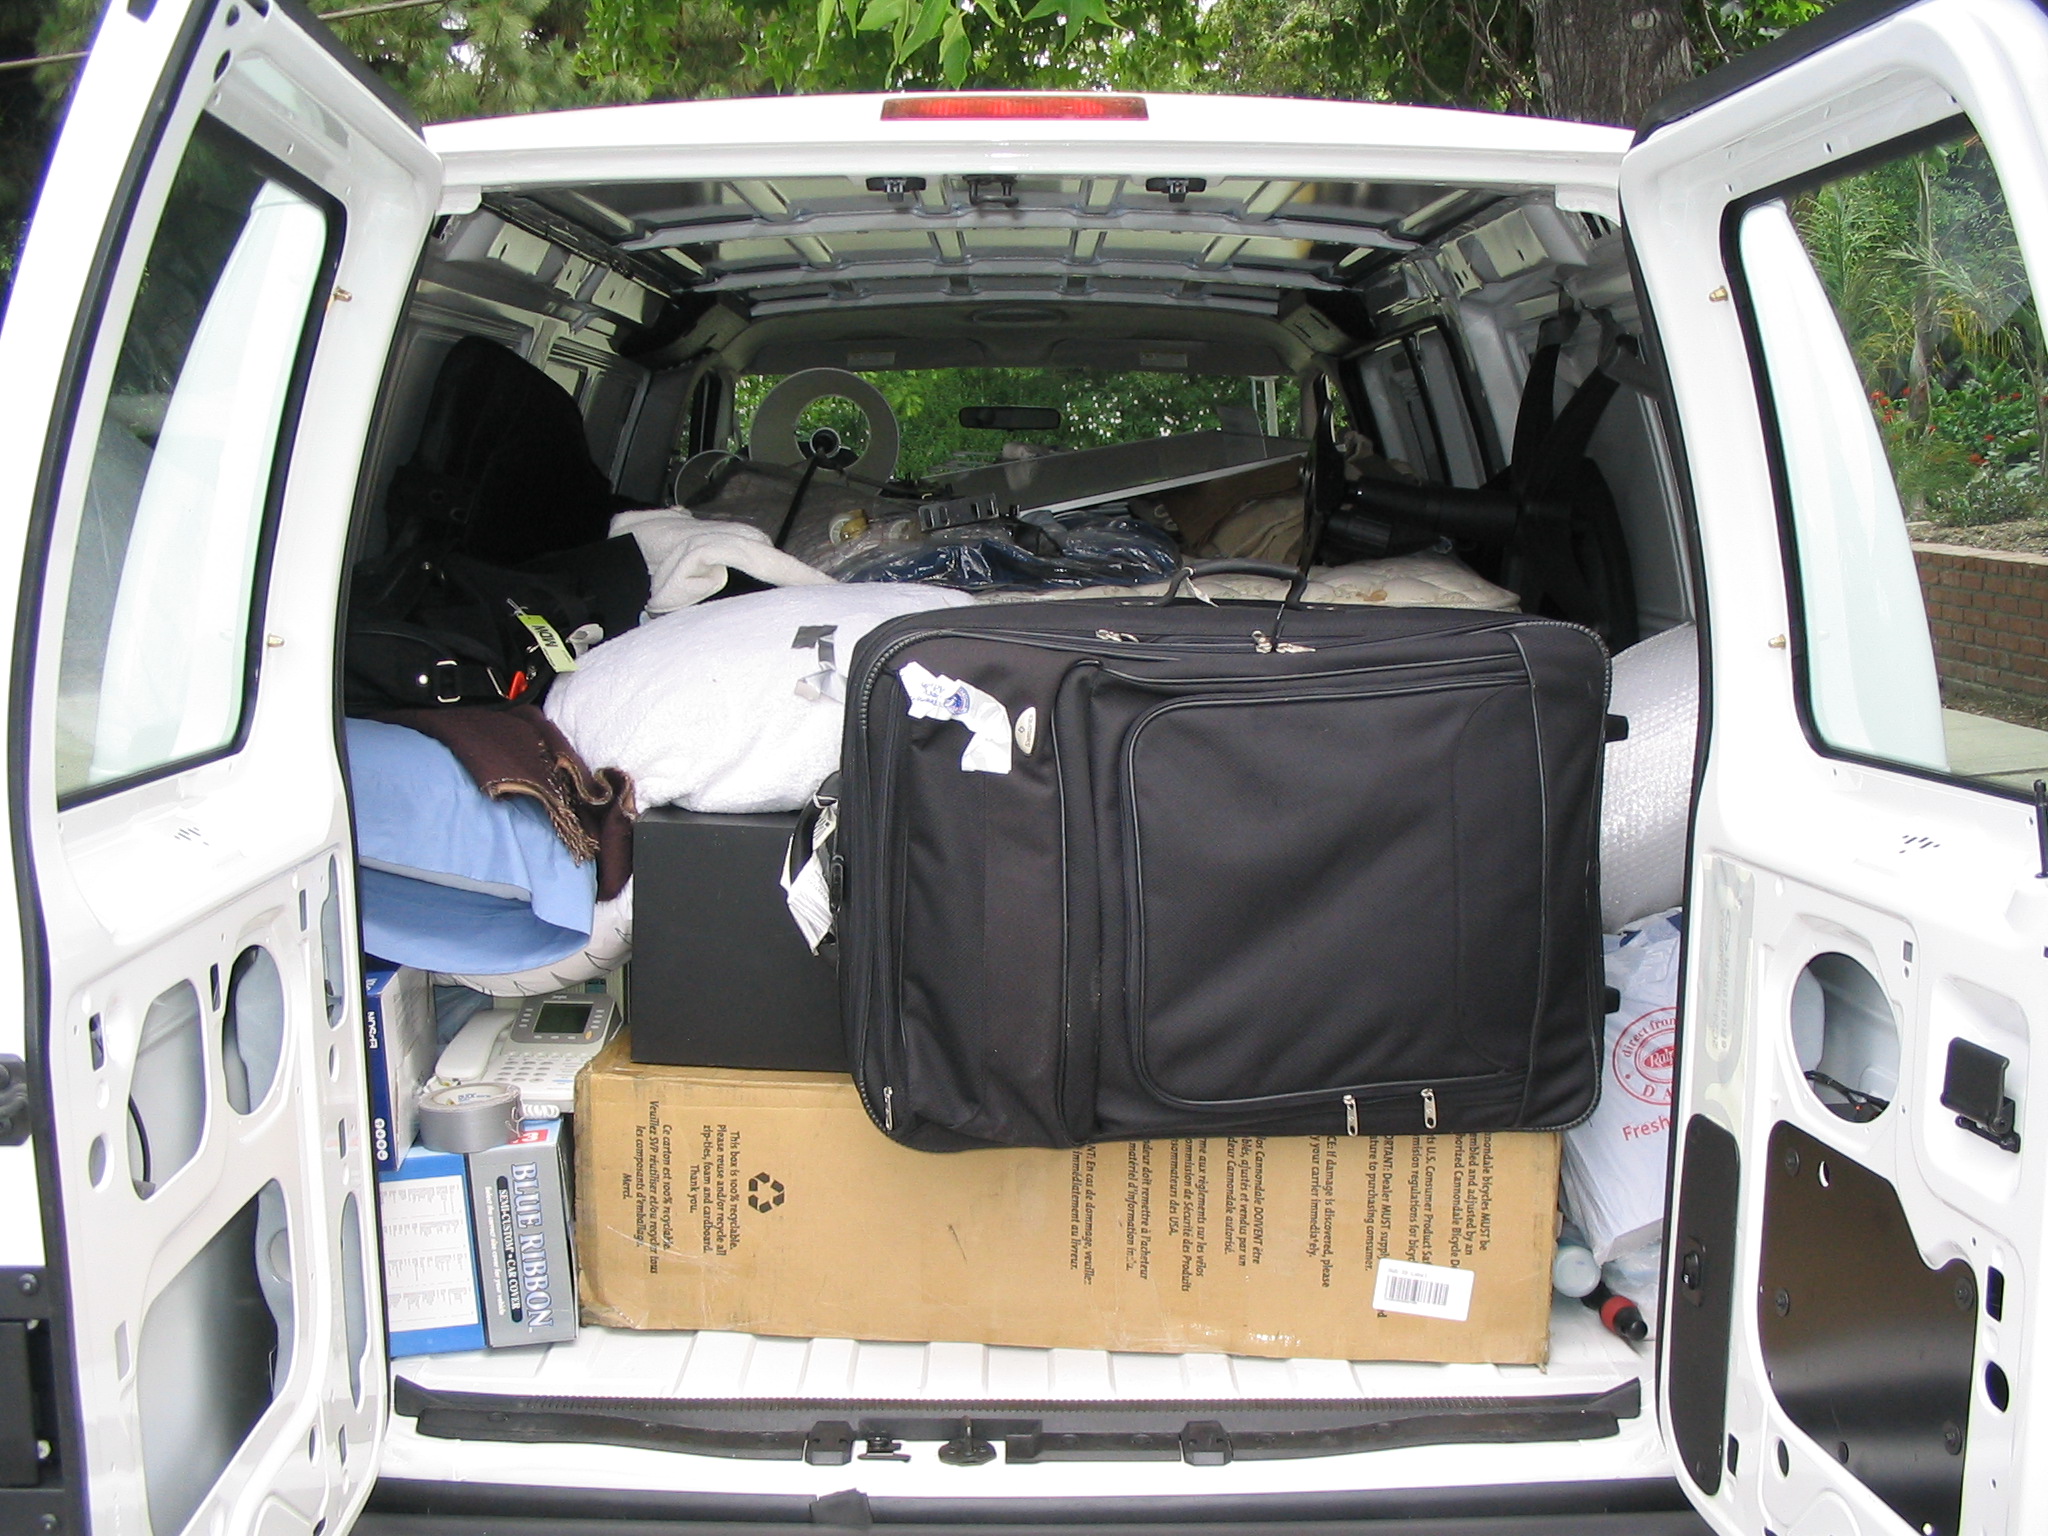 Van, Packed